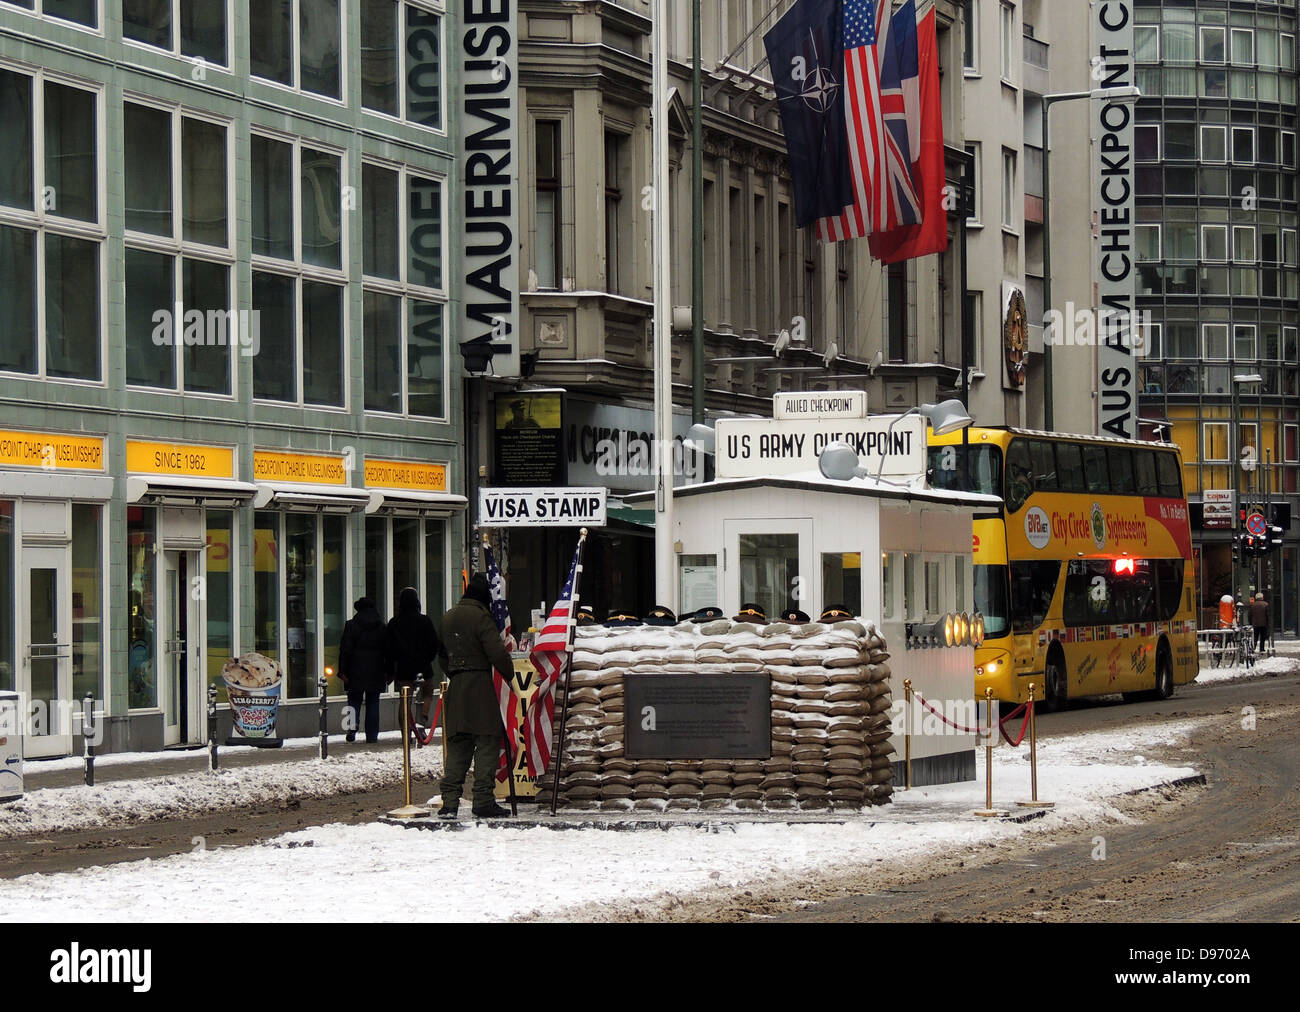 Il Checkpoint Charlie. Il Checkpoint Charlie era il nome dato dagli Alleati occidentali per i più noti del muro di Berlino in punto di incrocio tra Berlino Ovest e Berlino Est durante la Guerra Fredda. Questa immagine mostra la traversata post dopo la riunificazione. Foto Stock